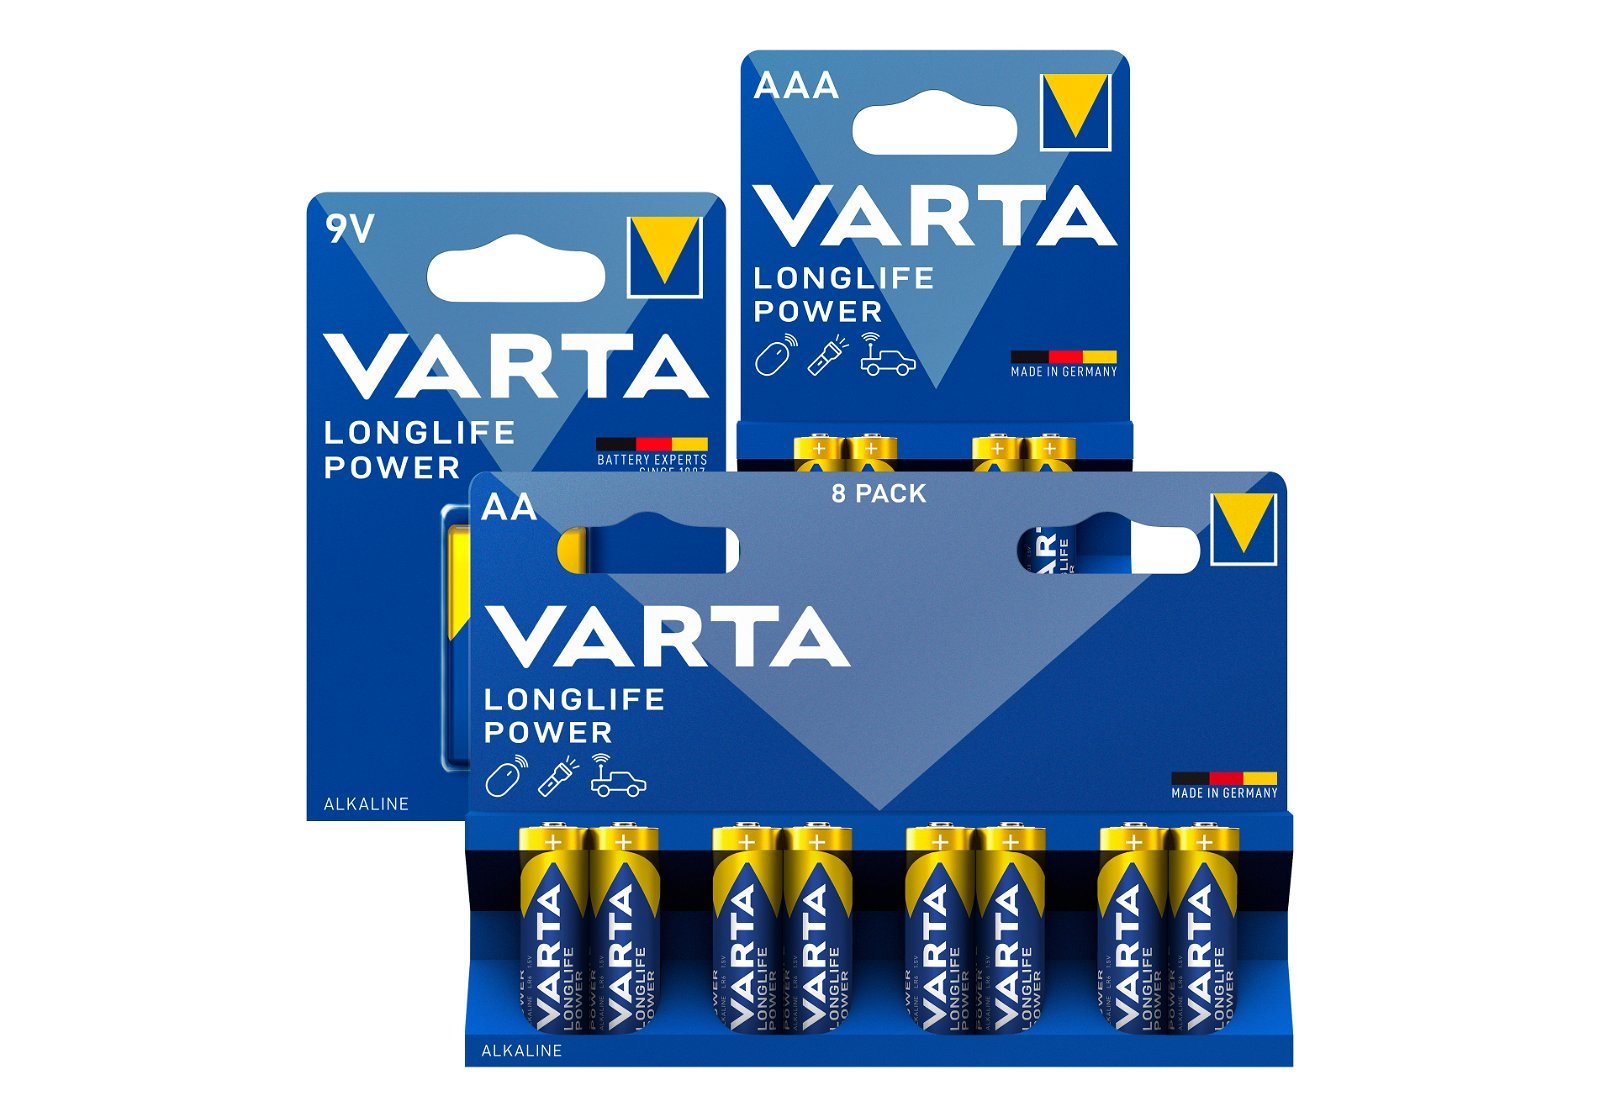 VARTA LongLife Power batteri AAA/LR03 1.5 v 4 stk